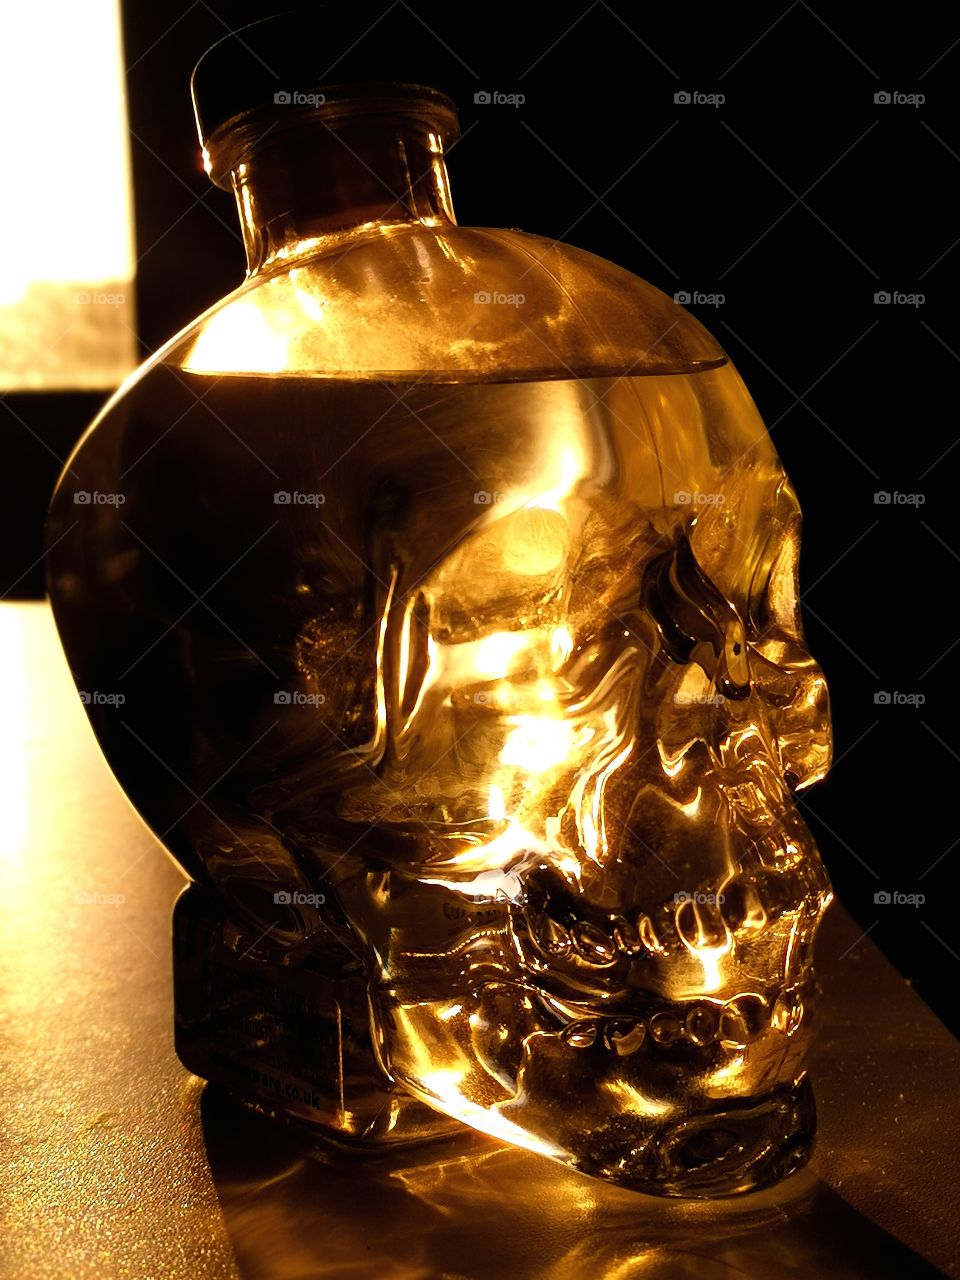 vodka skull